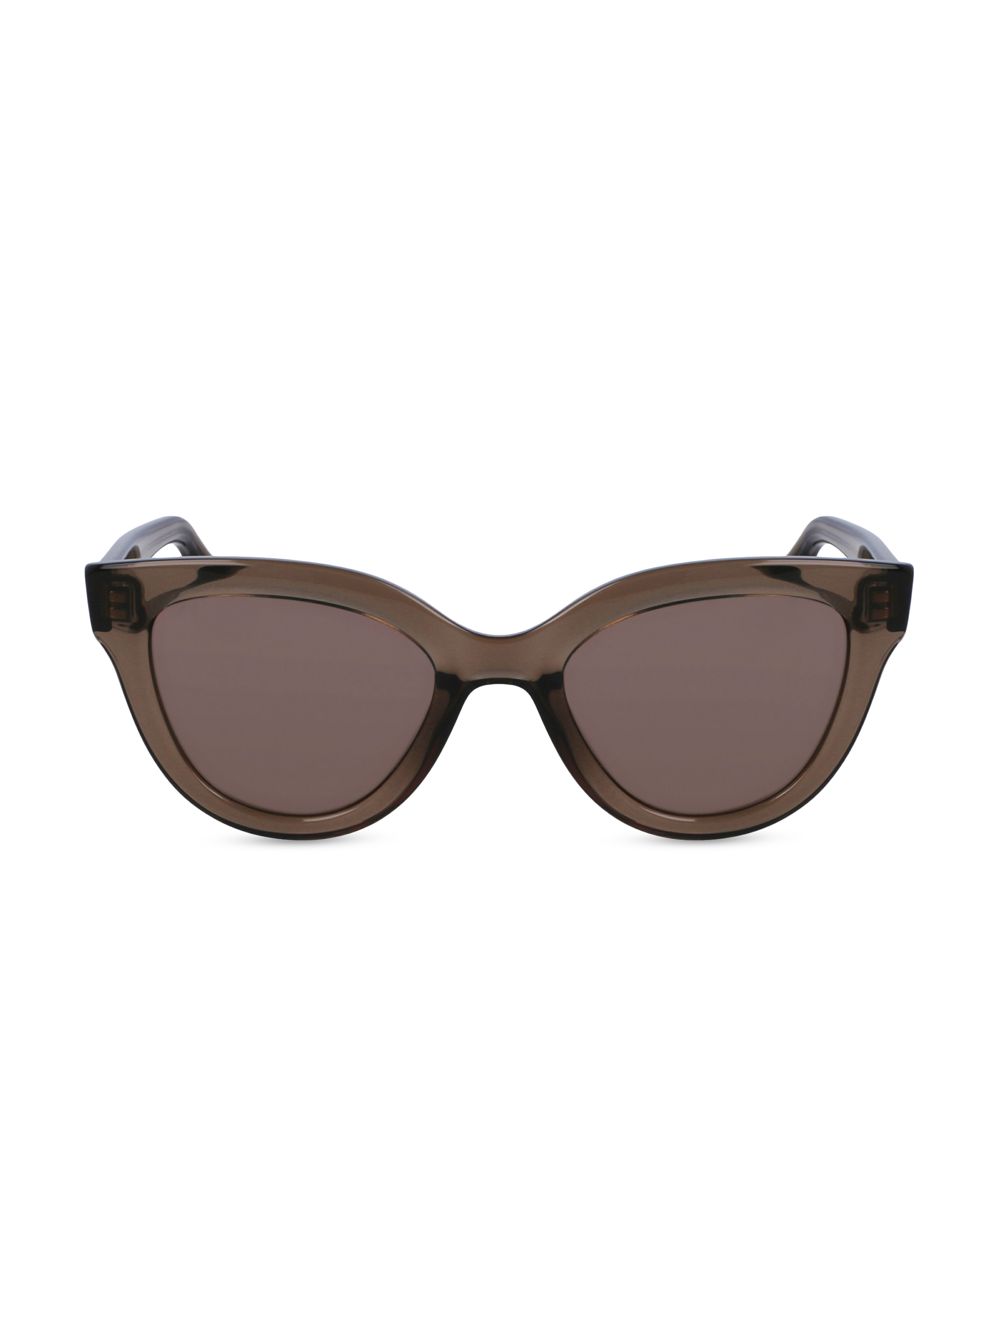 Джинсовые солнцезащитные очки «кошачий глаз» 52 мм Victoria Beckham очки кошачий глаз vb602s victoria beckham